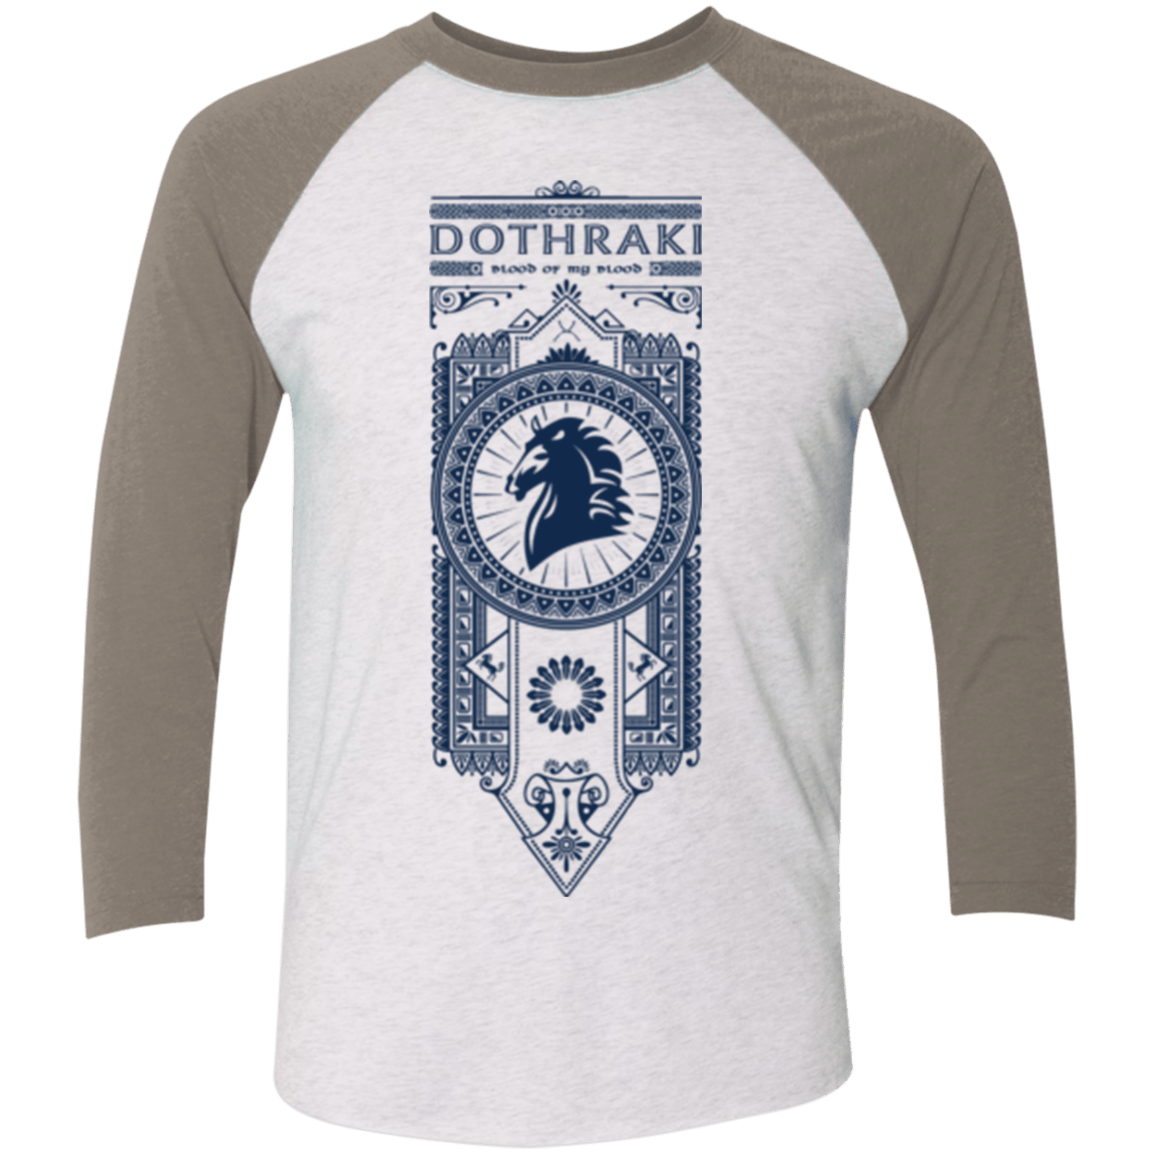 T-Shirts Heather White/Vintage Grey / X-Small Dothraki Men's Triblend 3/4 Sleeve